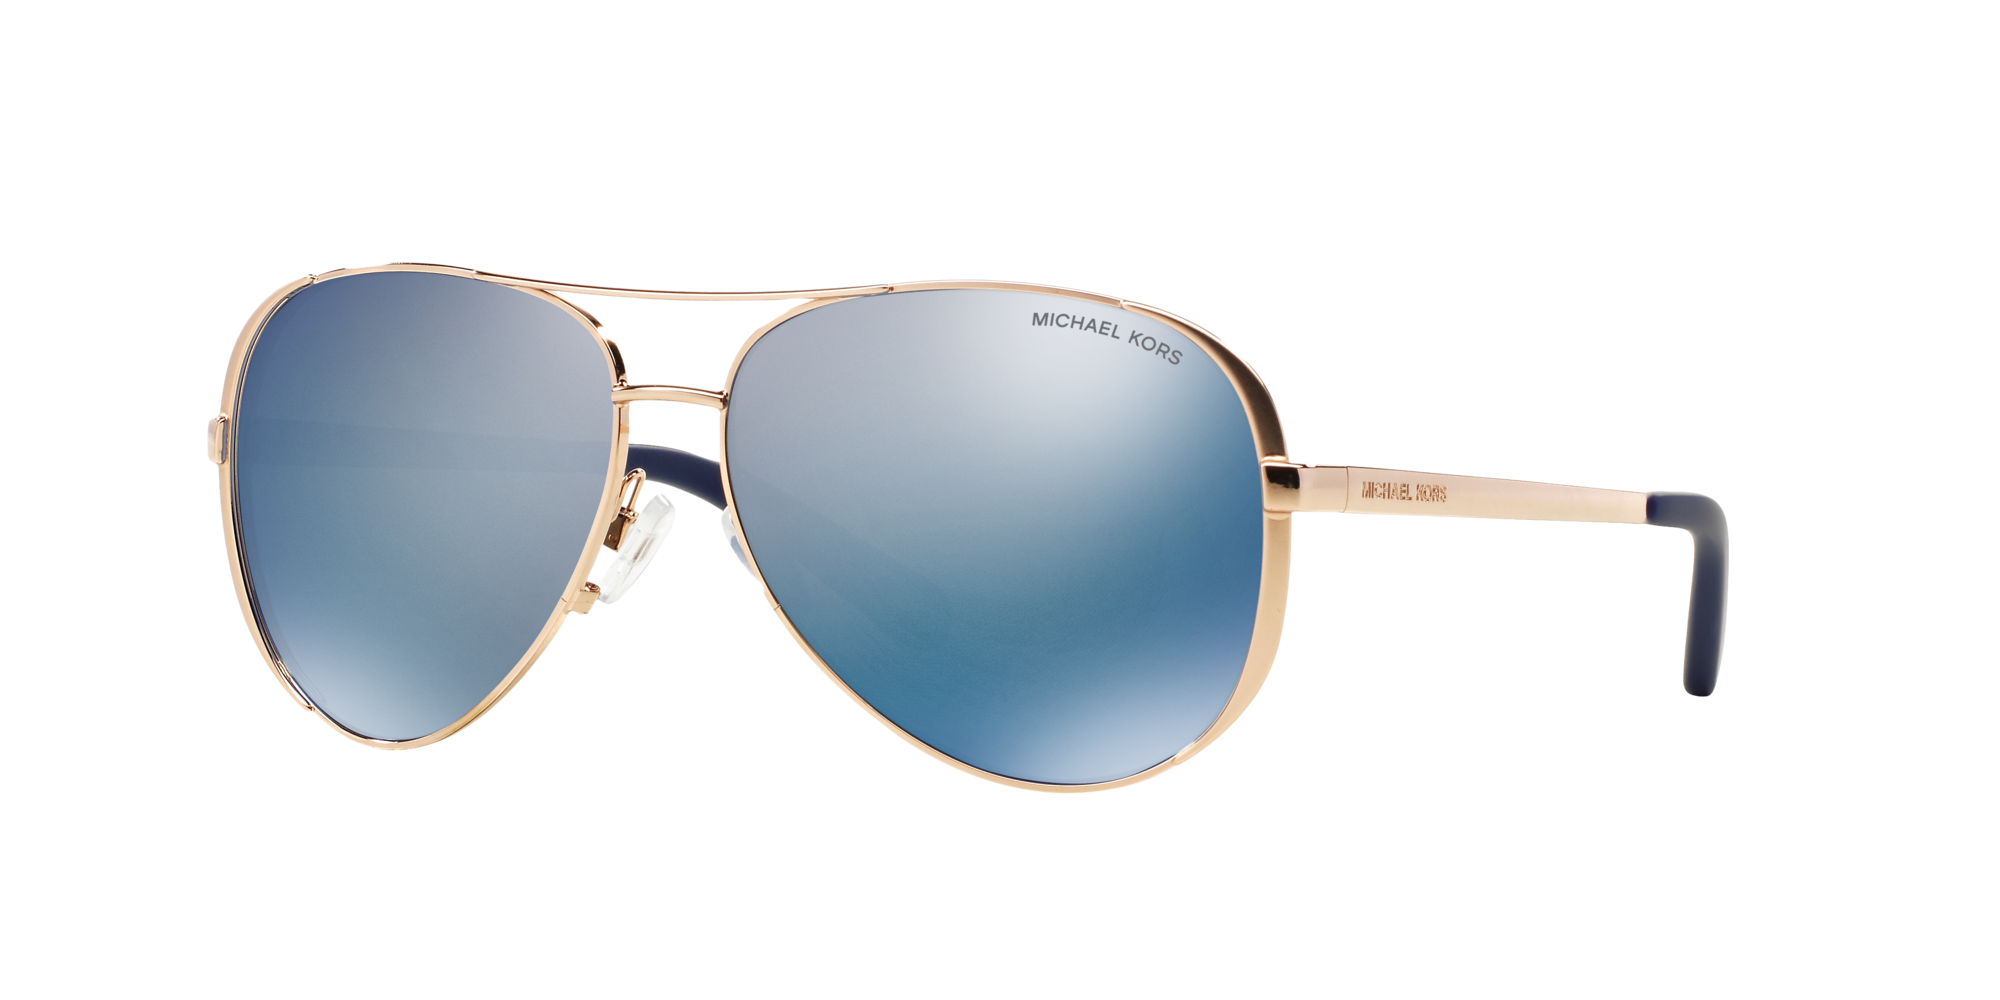 mk aviator sunglasses